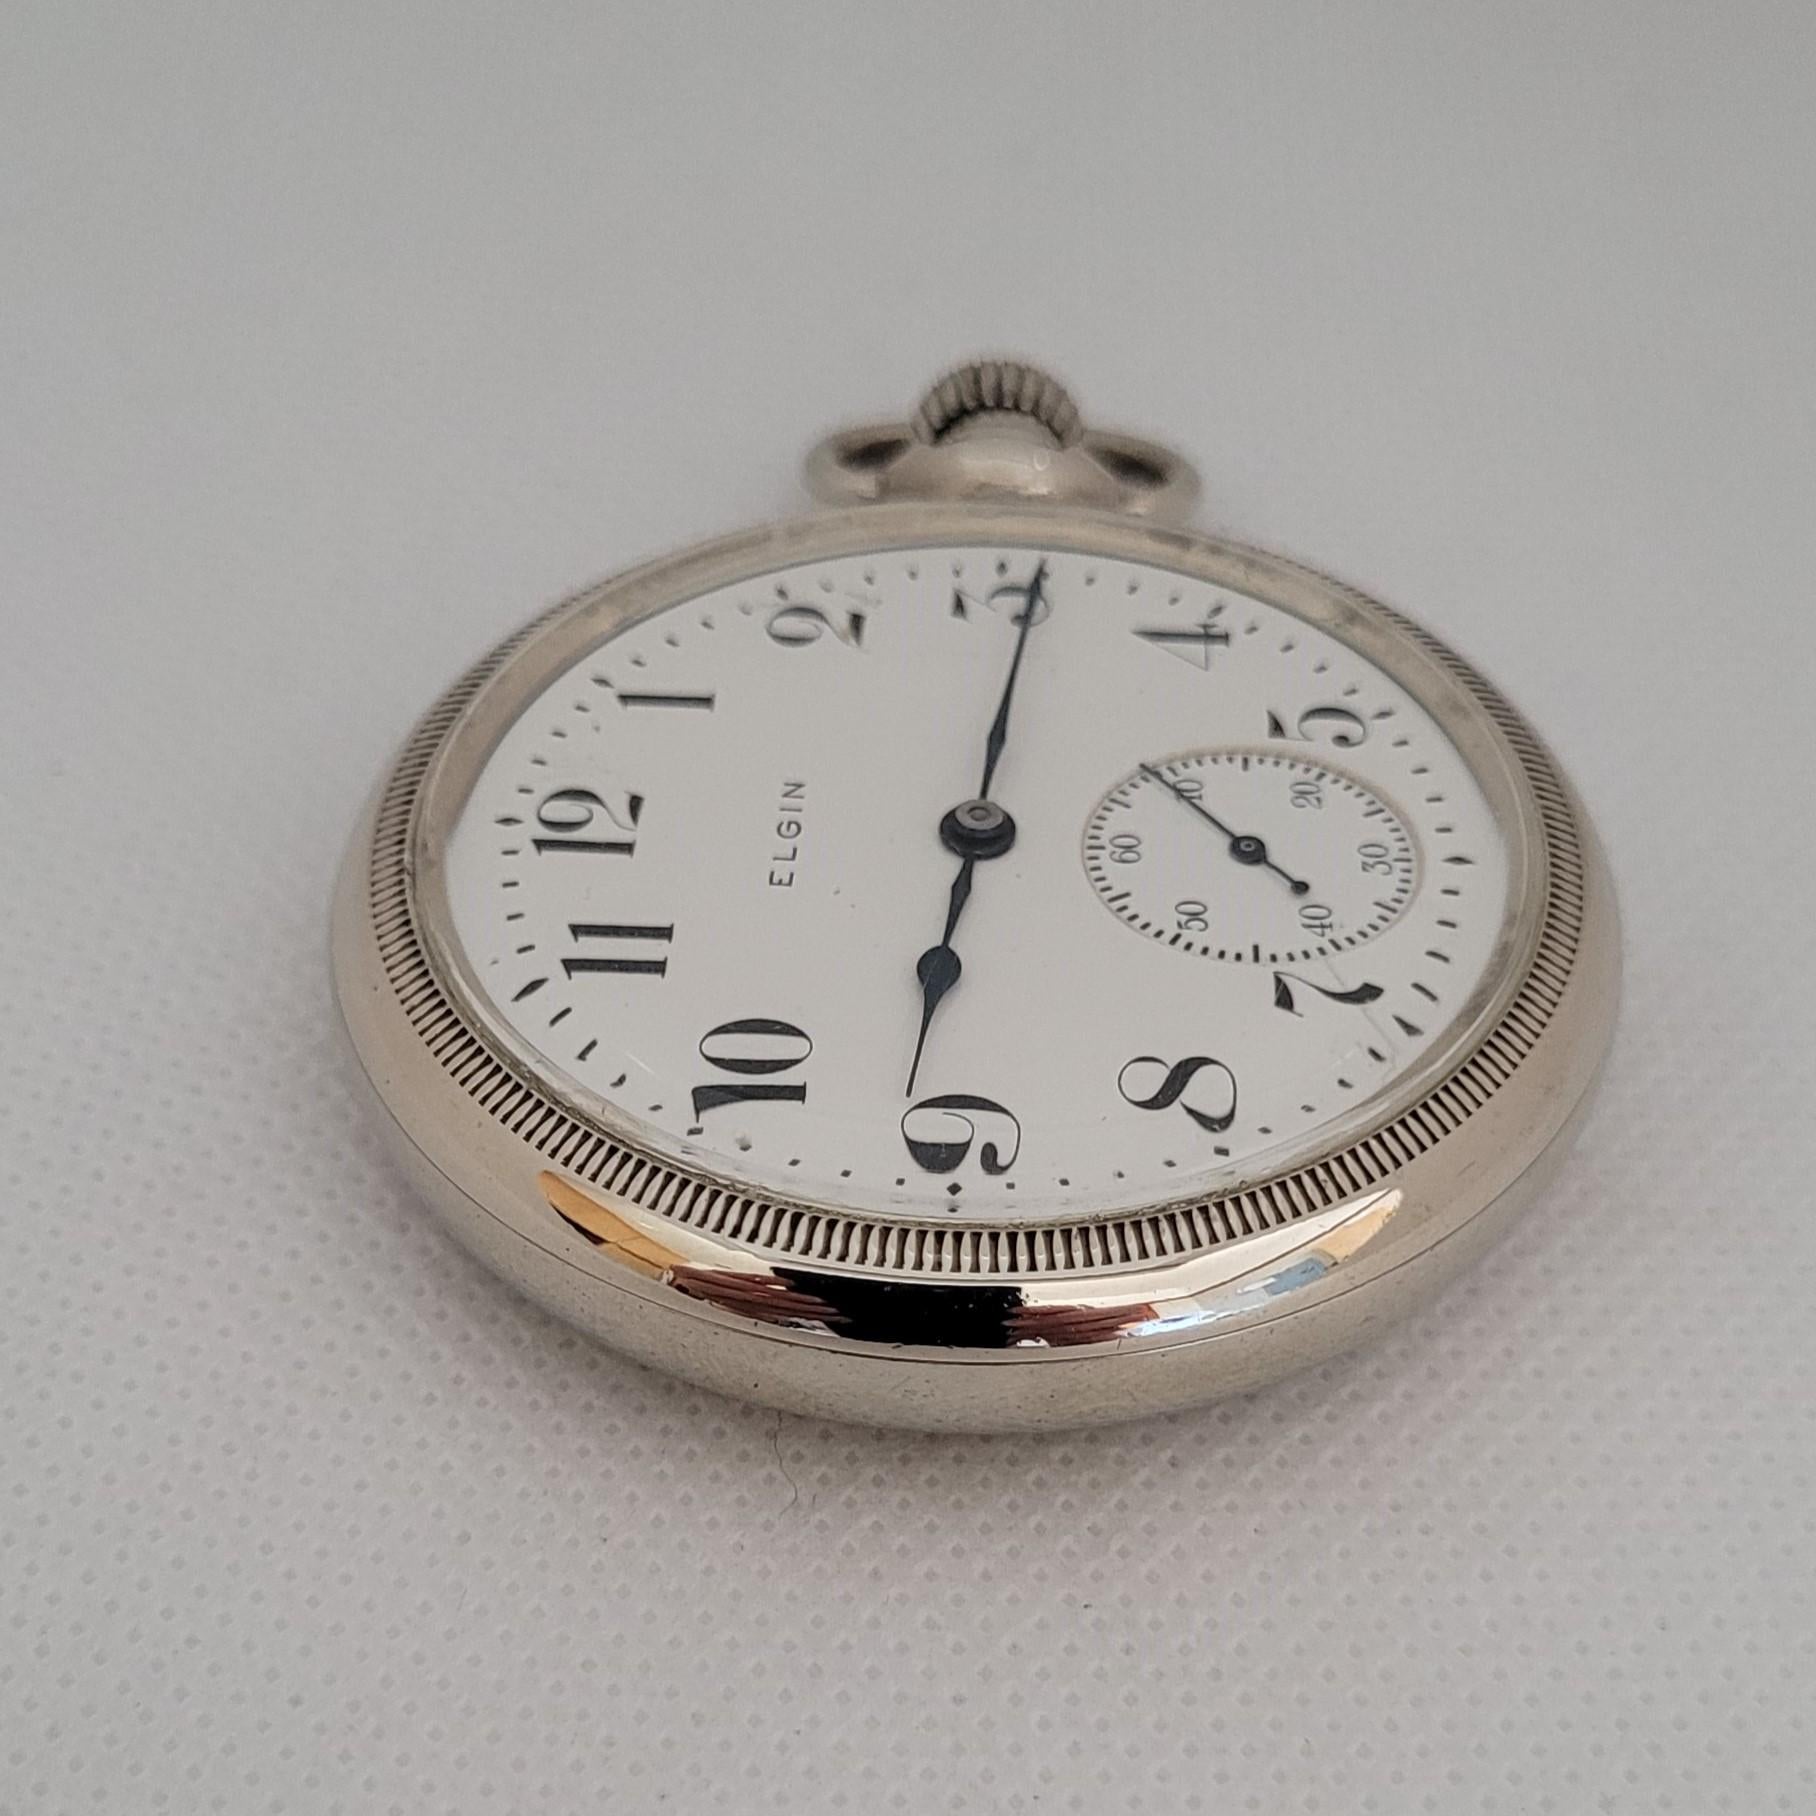 Diese 53 mm große Elgin-Taschenuhr von 1906 mit weißem Zifferblatt ist ein atemberaubender Zeitmesser, der mit Präzision und Eleganz gefertigt wurde. Mit einem Gewicht von 95,9 Gramm ist diese silberfarbene Uhr nicht nur optisch ansprechend, sondern